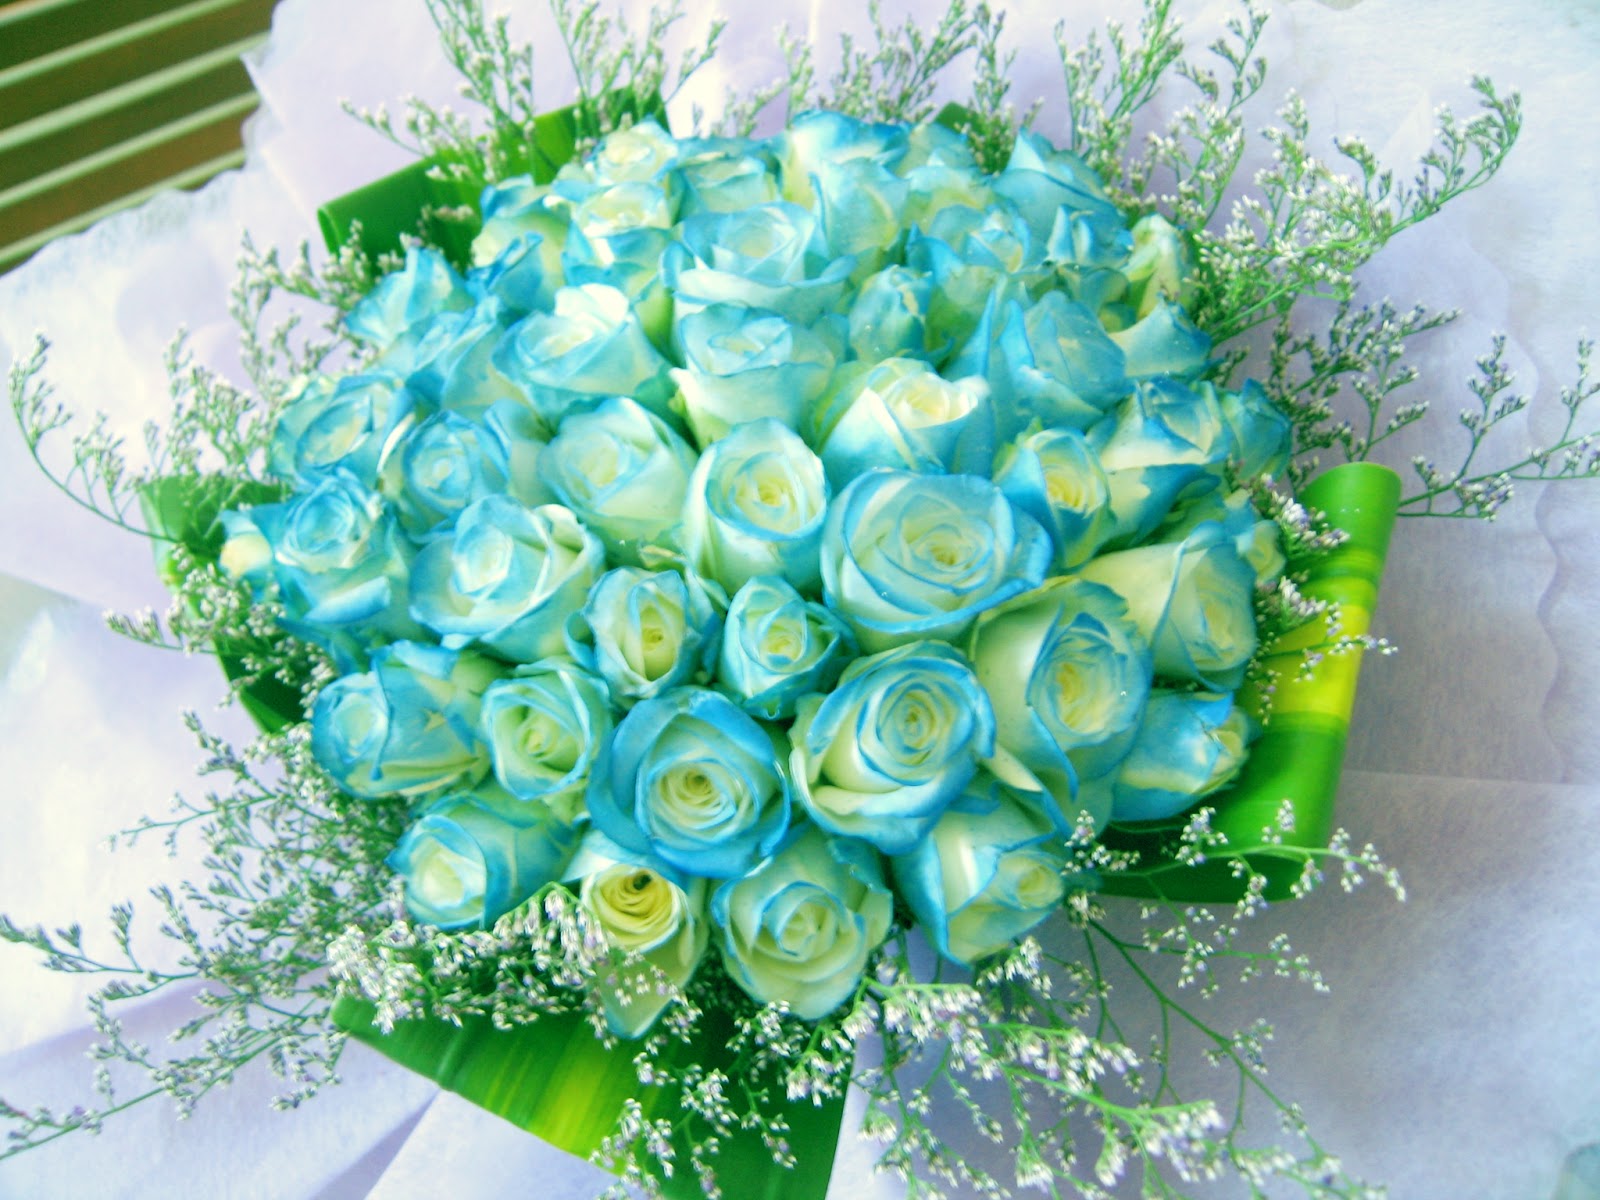 Bó hoa Hồng là món quà đầy ý nghĩa và phù hợp để tặng những người mà bạn yêu thương. Hãy ngắm nhìn những bó hoa đầy màu sắc và tươi tắn trong hình ảnh này.